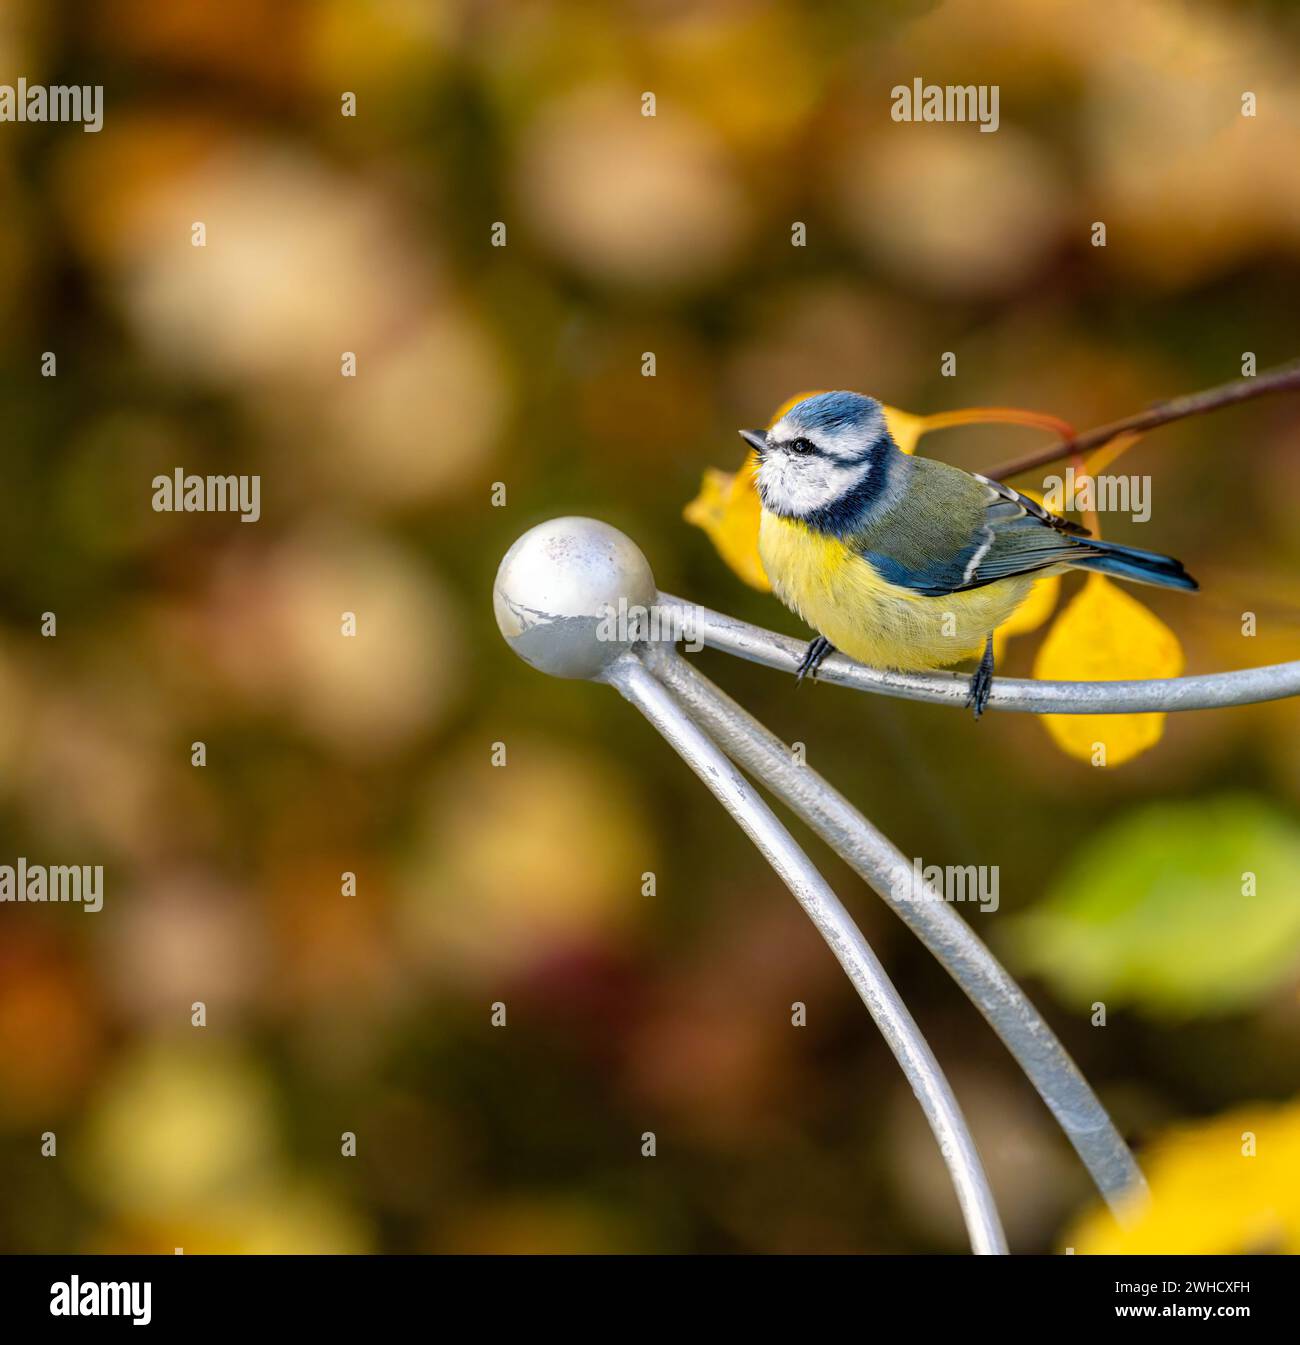 Primo piano di un uccello tit blu seduto su un bar metallico Foto Stock